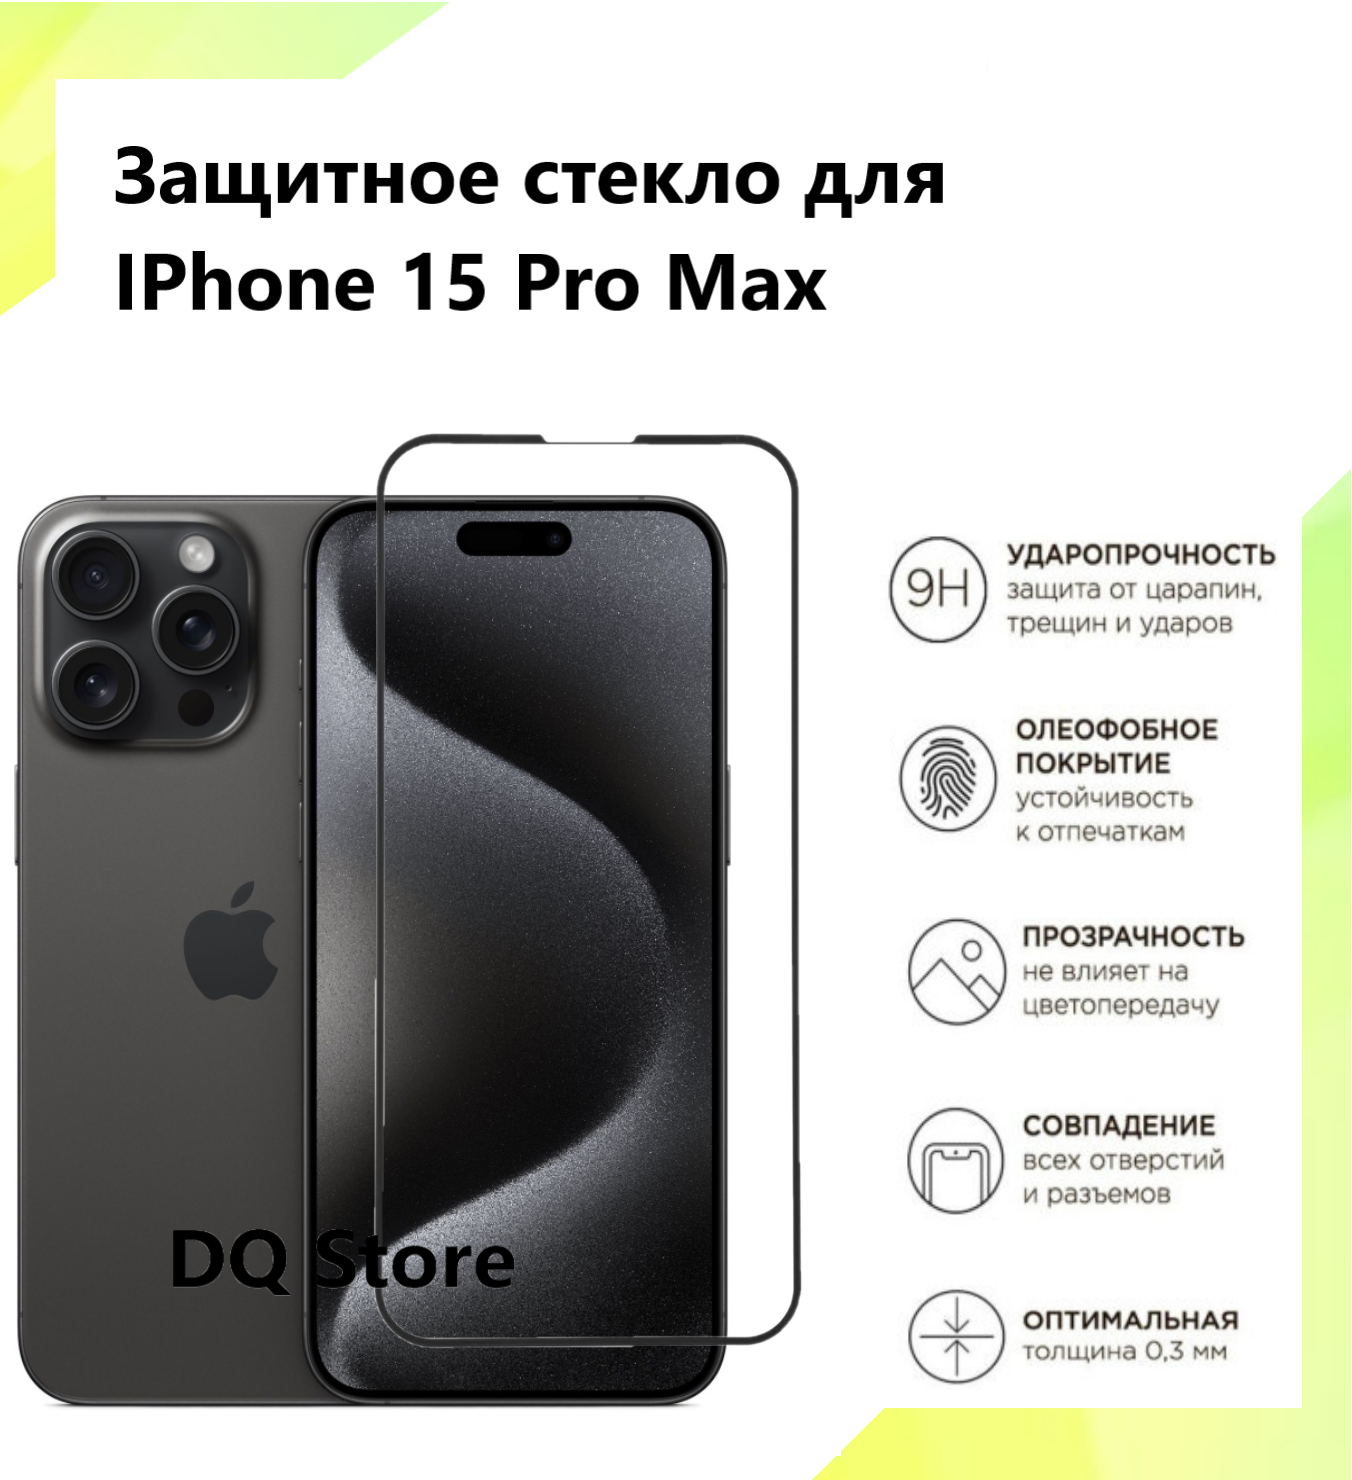 Защитное стекло на Apple iPhone 15 Pro Max/ Эпл Айфон 15 Про Макс. Полноэкранное защитное стекло с олеофобным покрытием